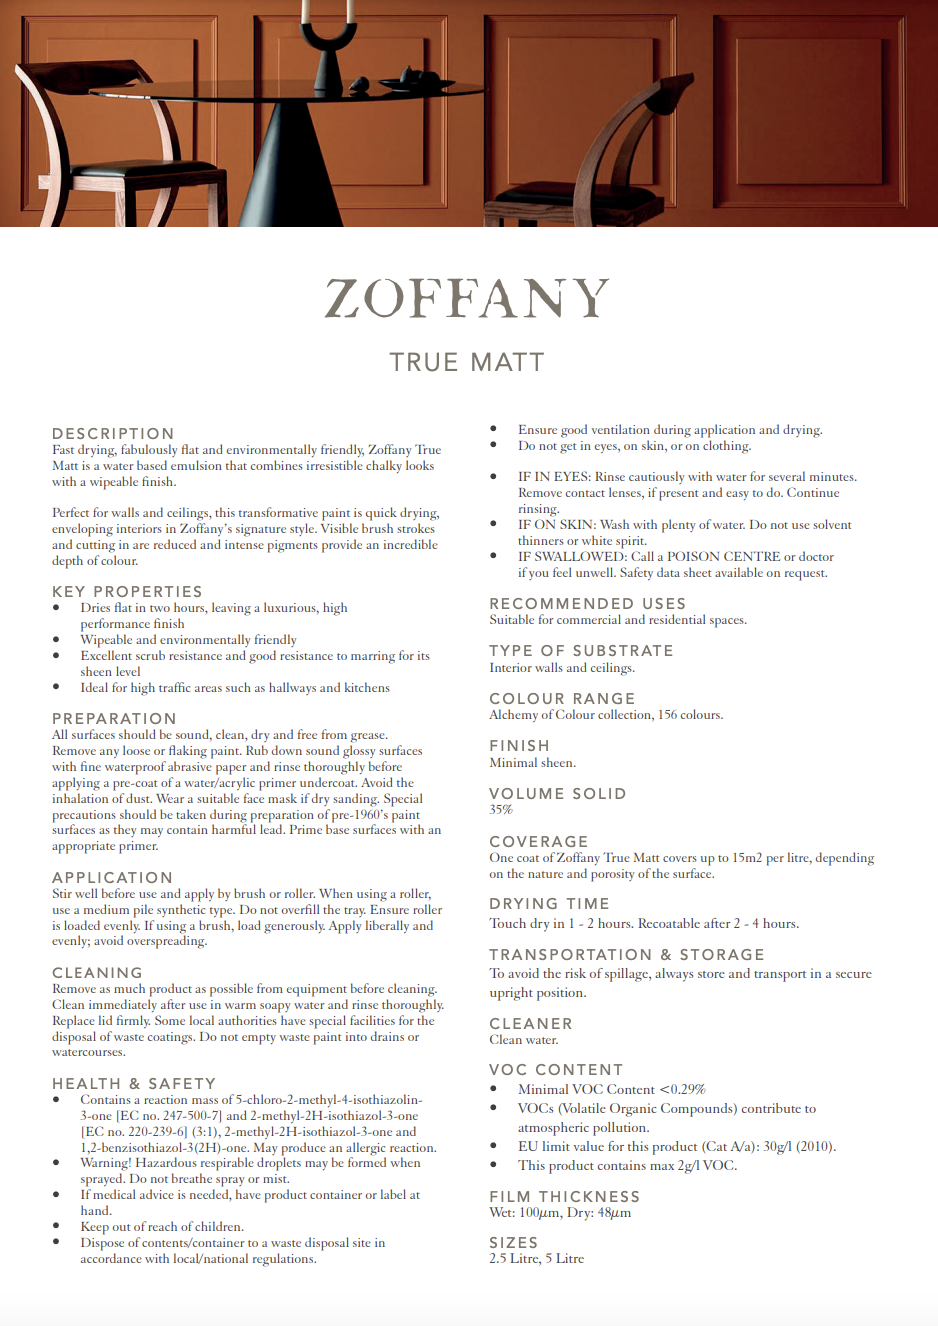 Zoffany Dove True Matt Emulsion